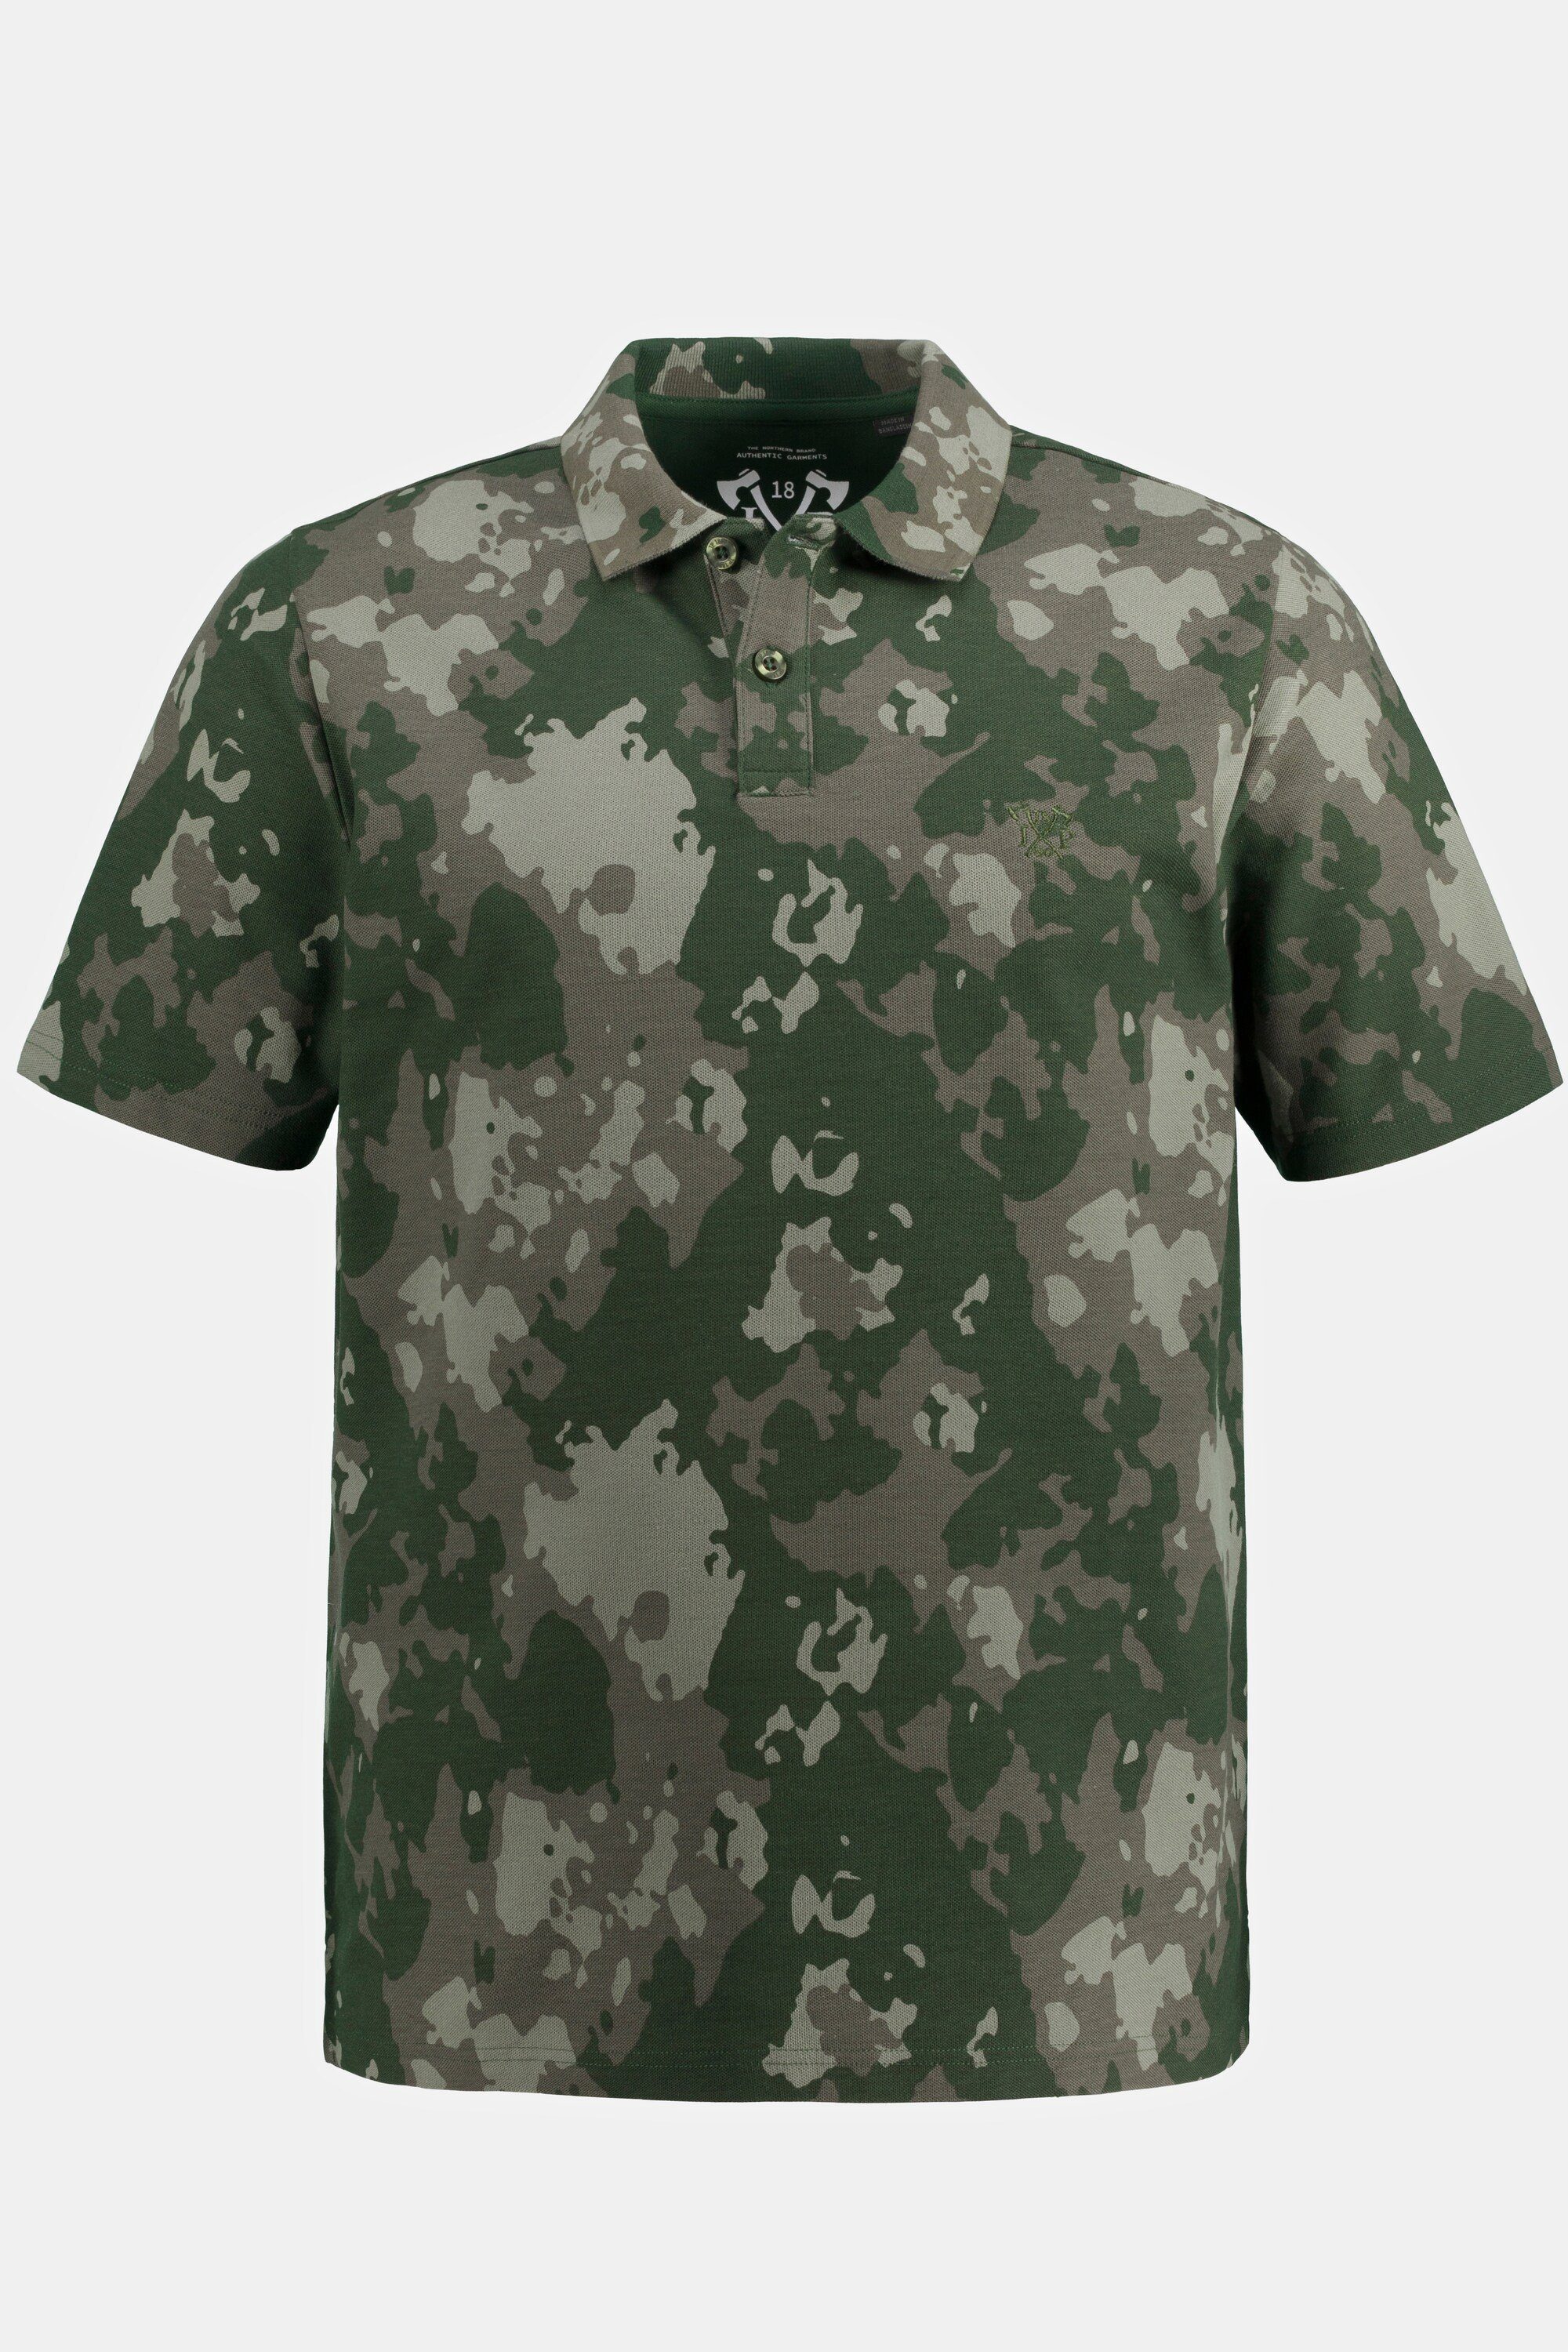 JP1880 Poloshirt Camouflage Print Halbarm Poloshirt